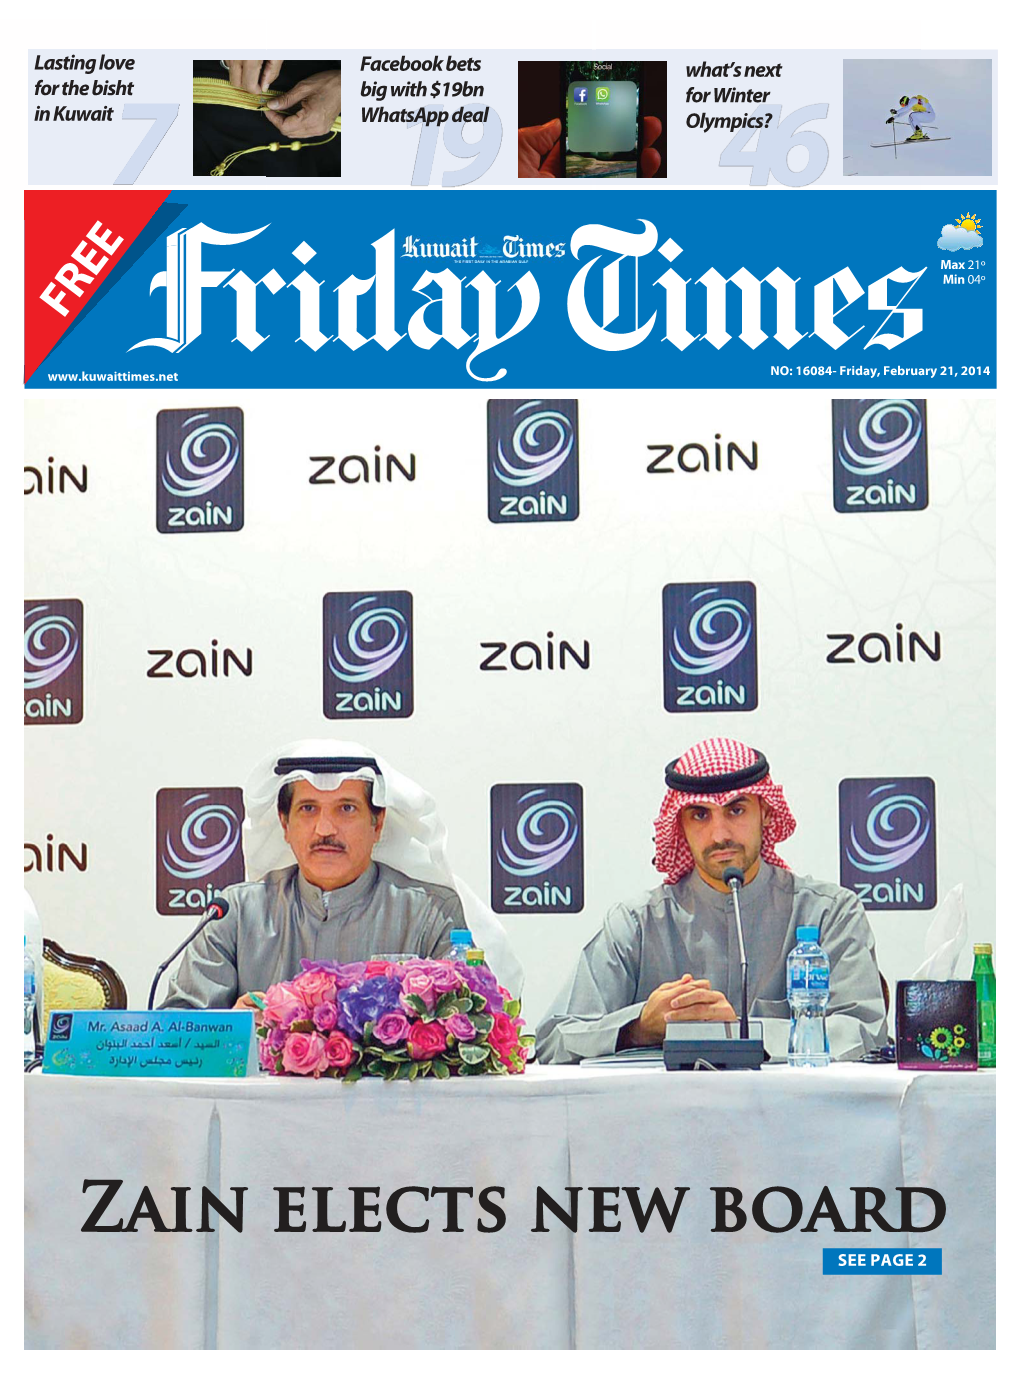 Zain Elects New Board